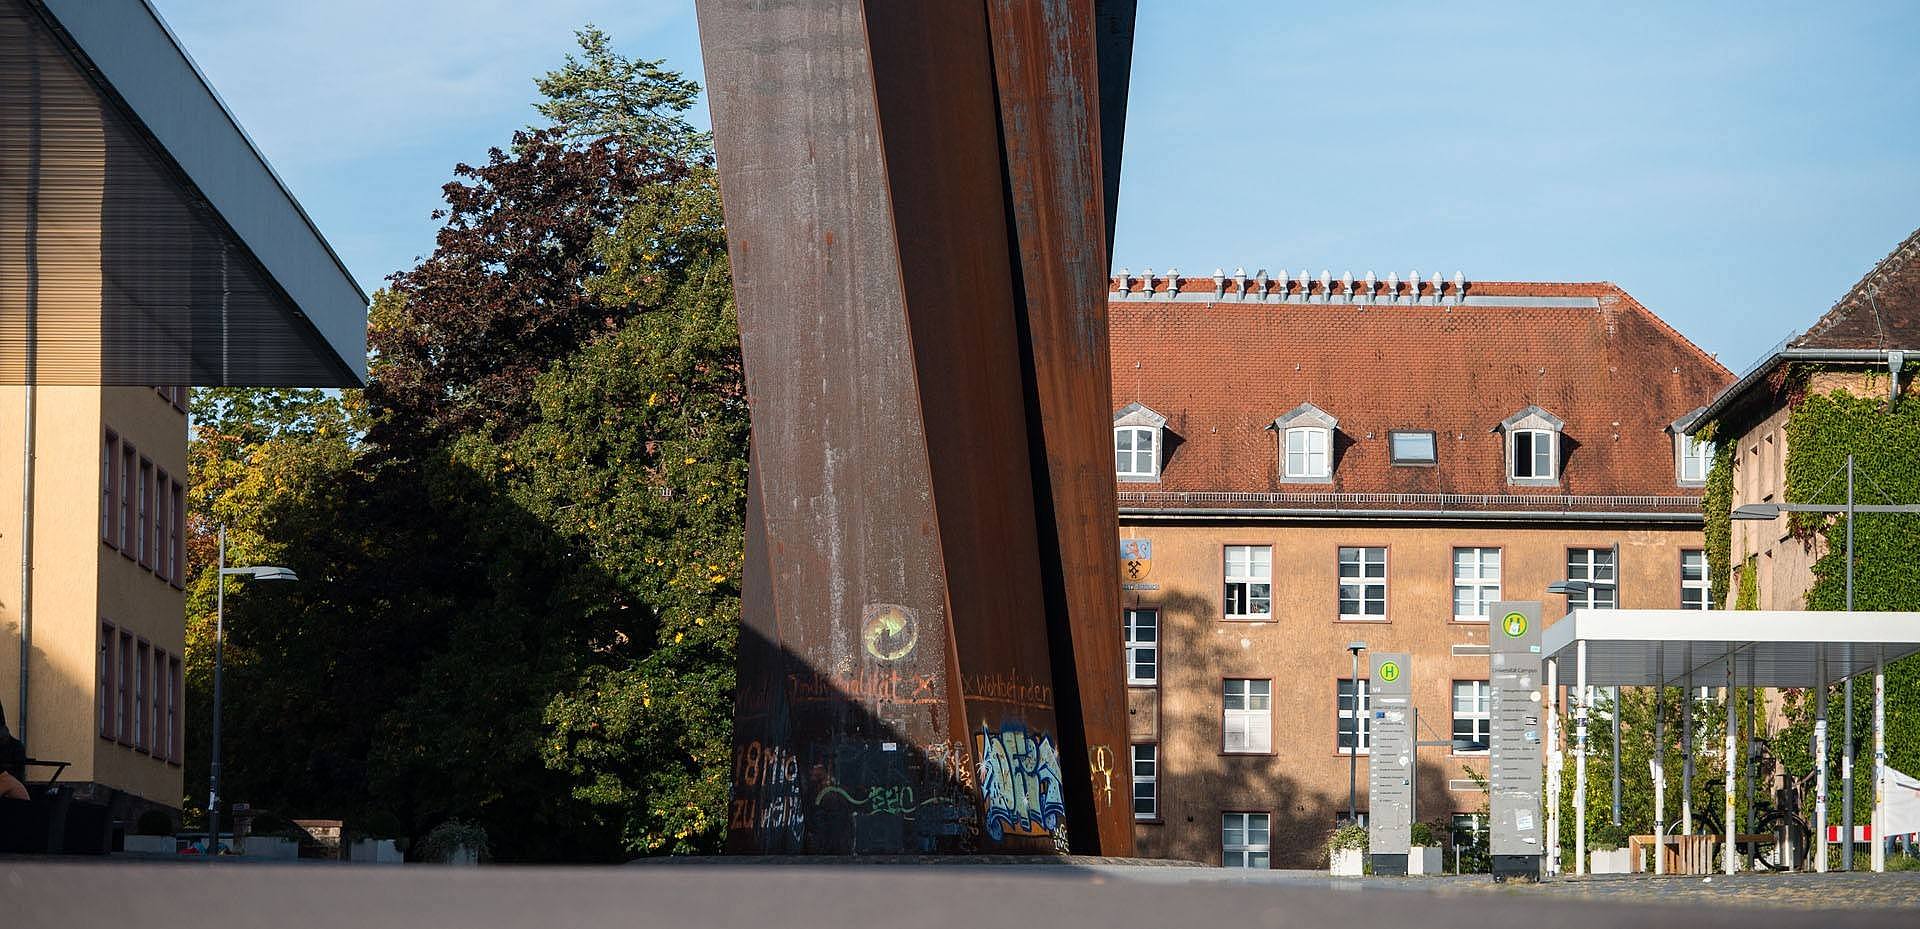 Campusansicht: Die Stahlskulptur Torque von Richard Serra umgeben von Universitätsgebäuden